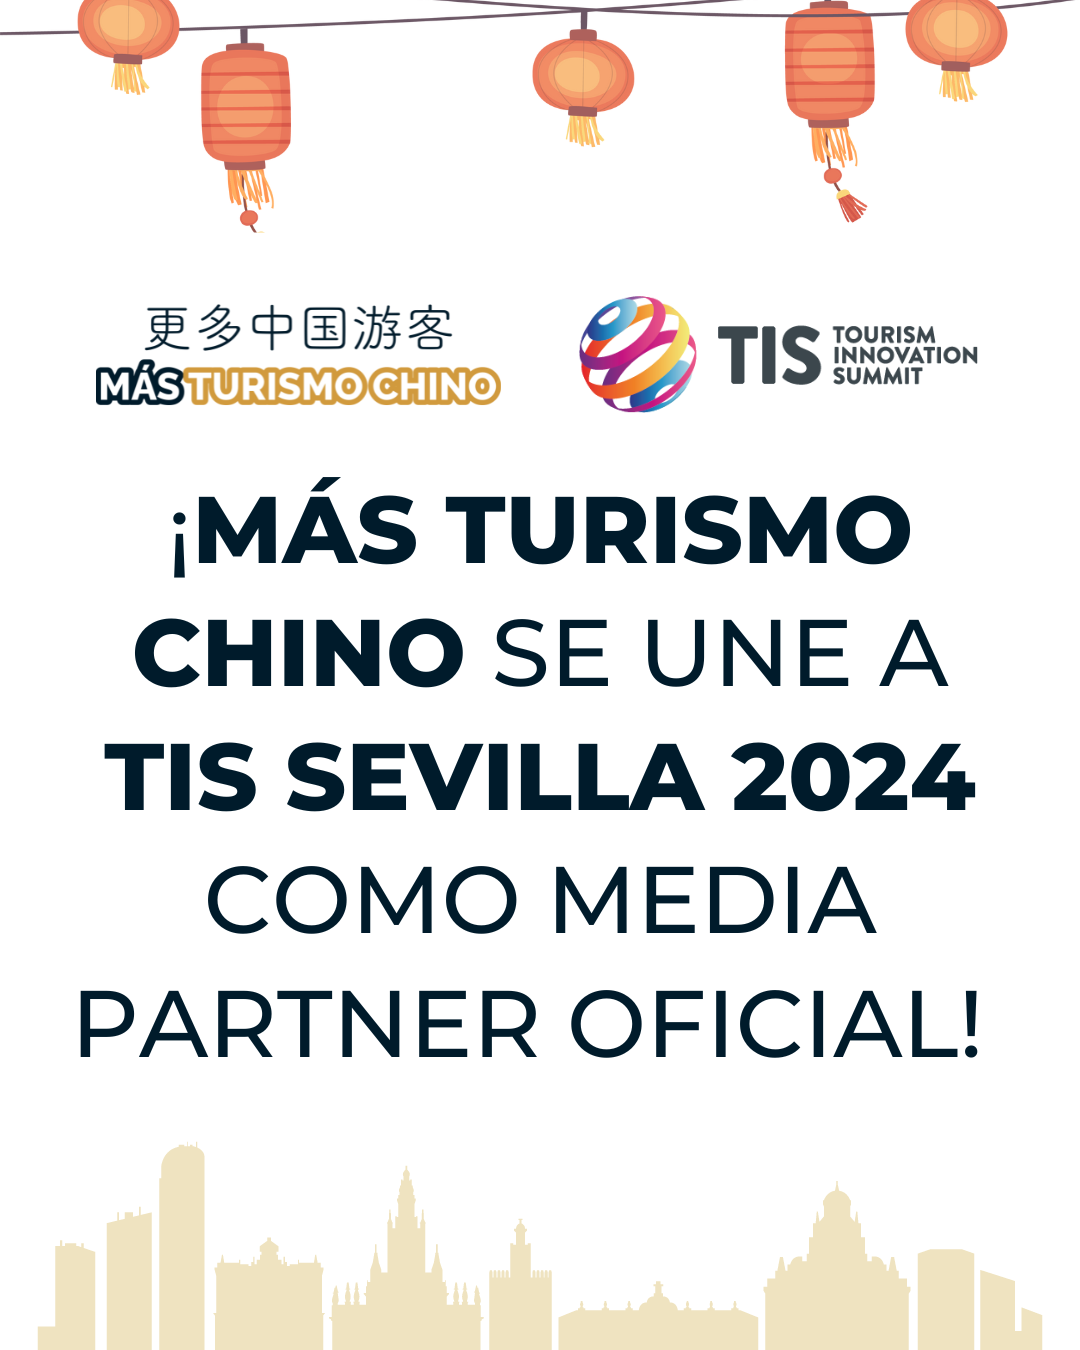 TIS Sevilla 2024 & Mas Turismo Chino